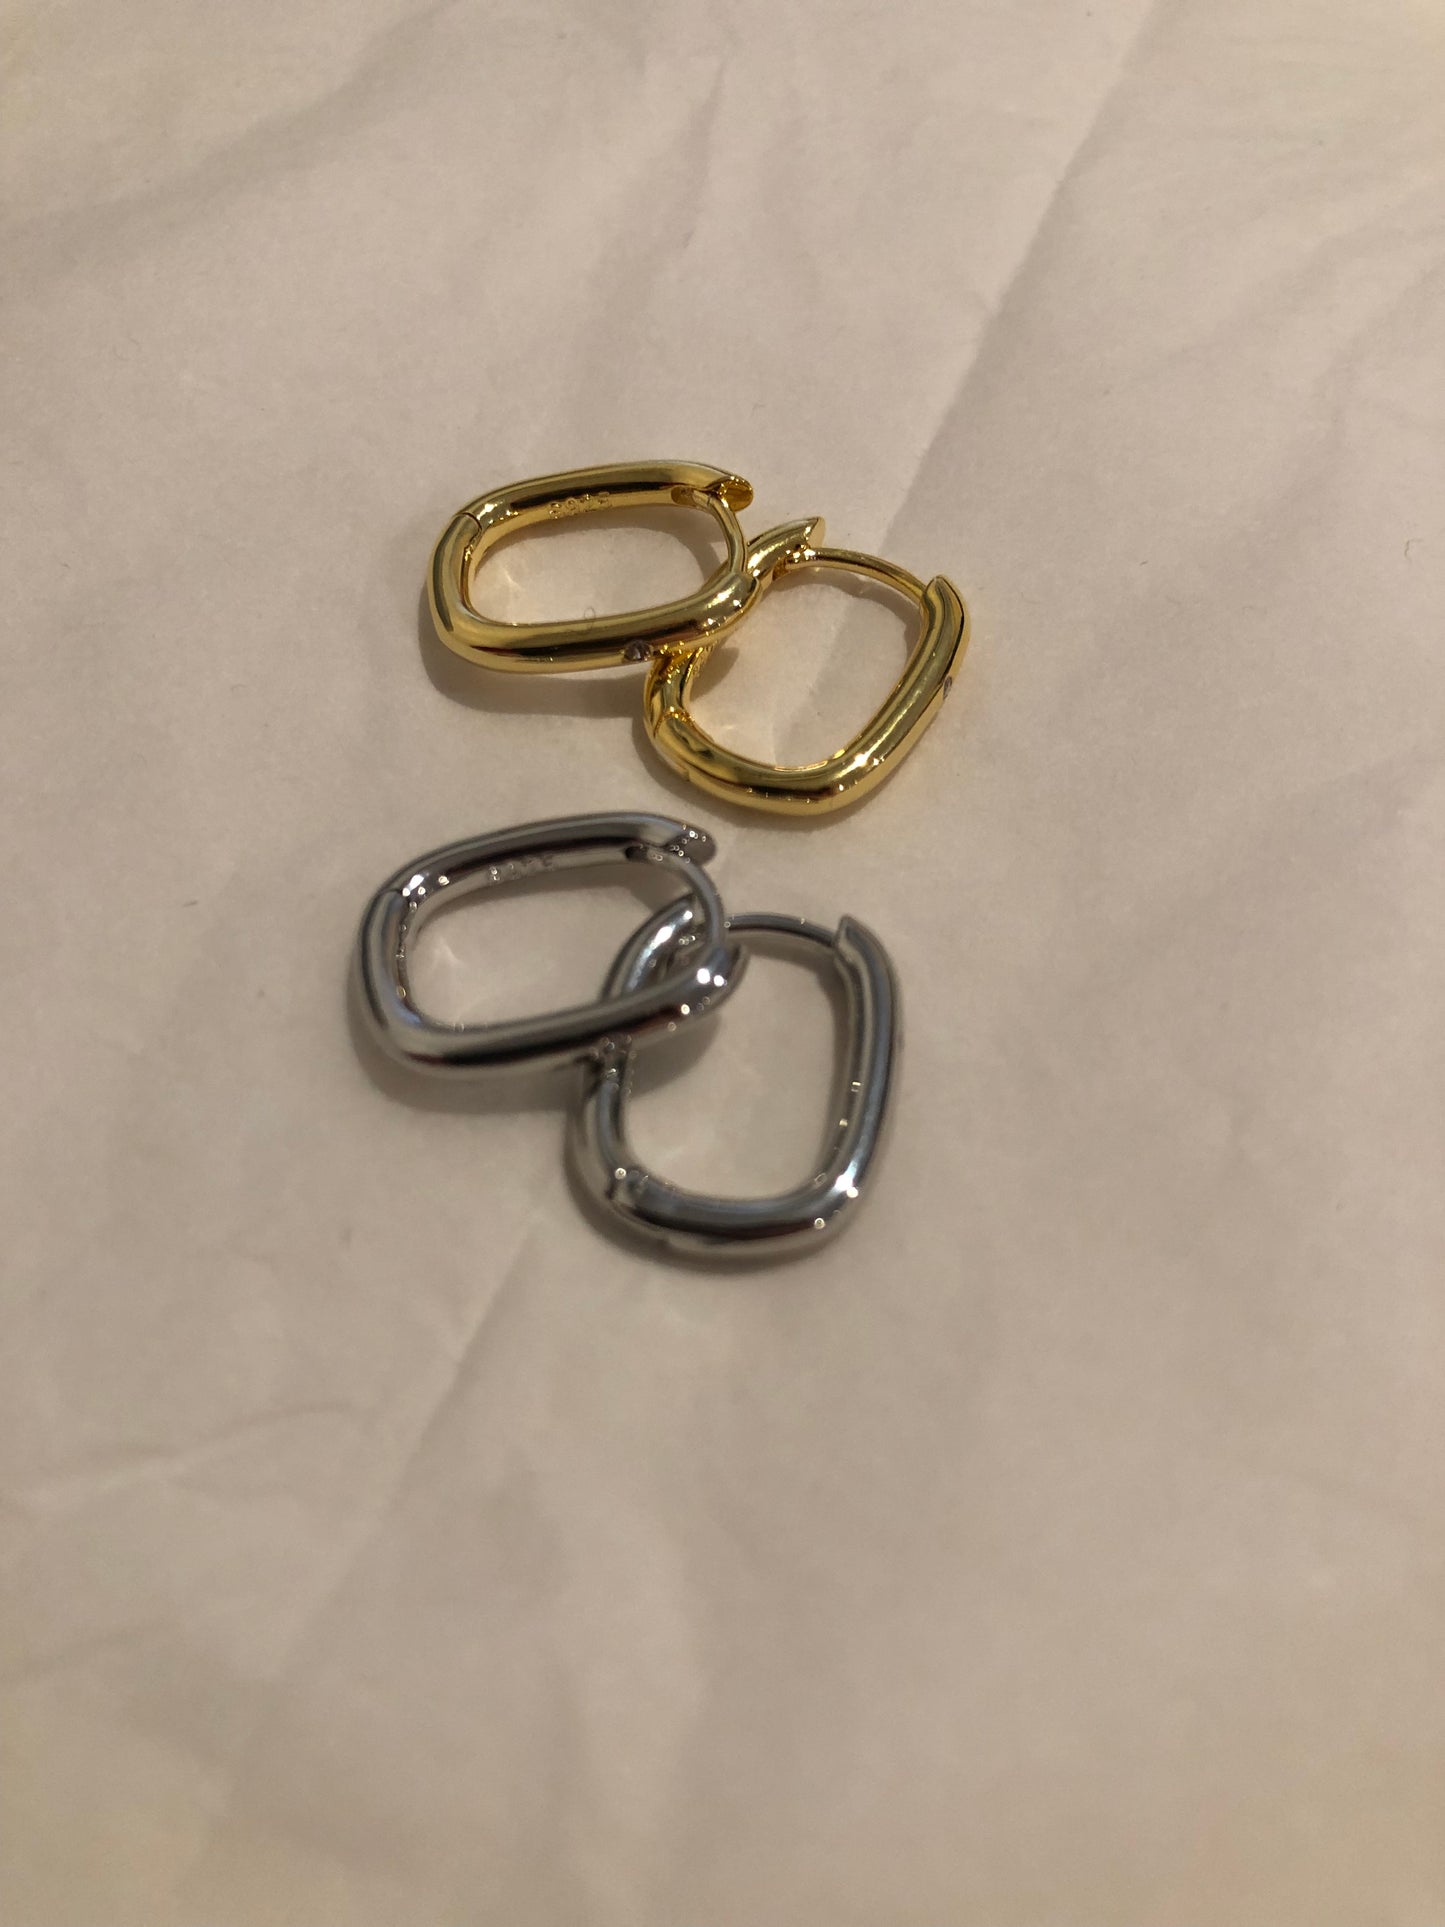 Piper earrings